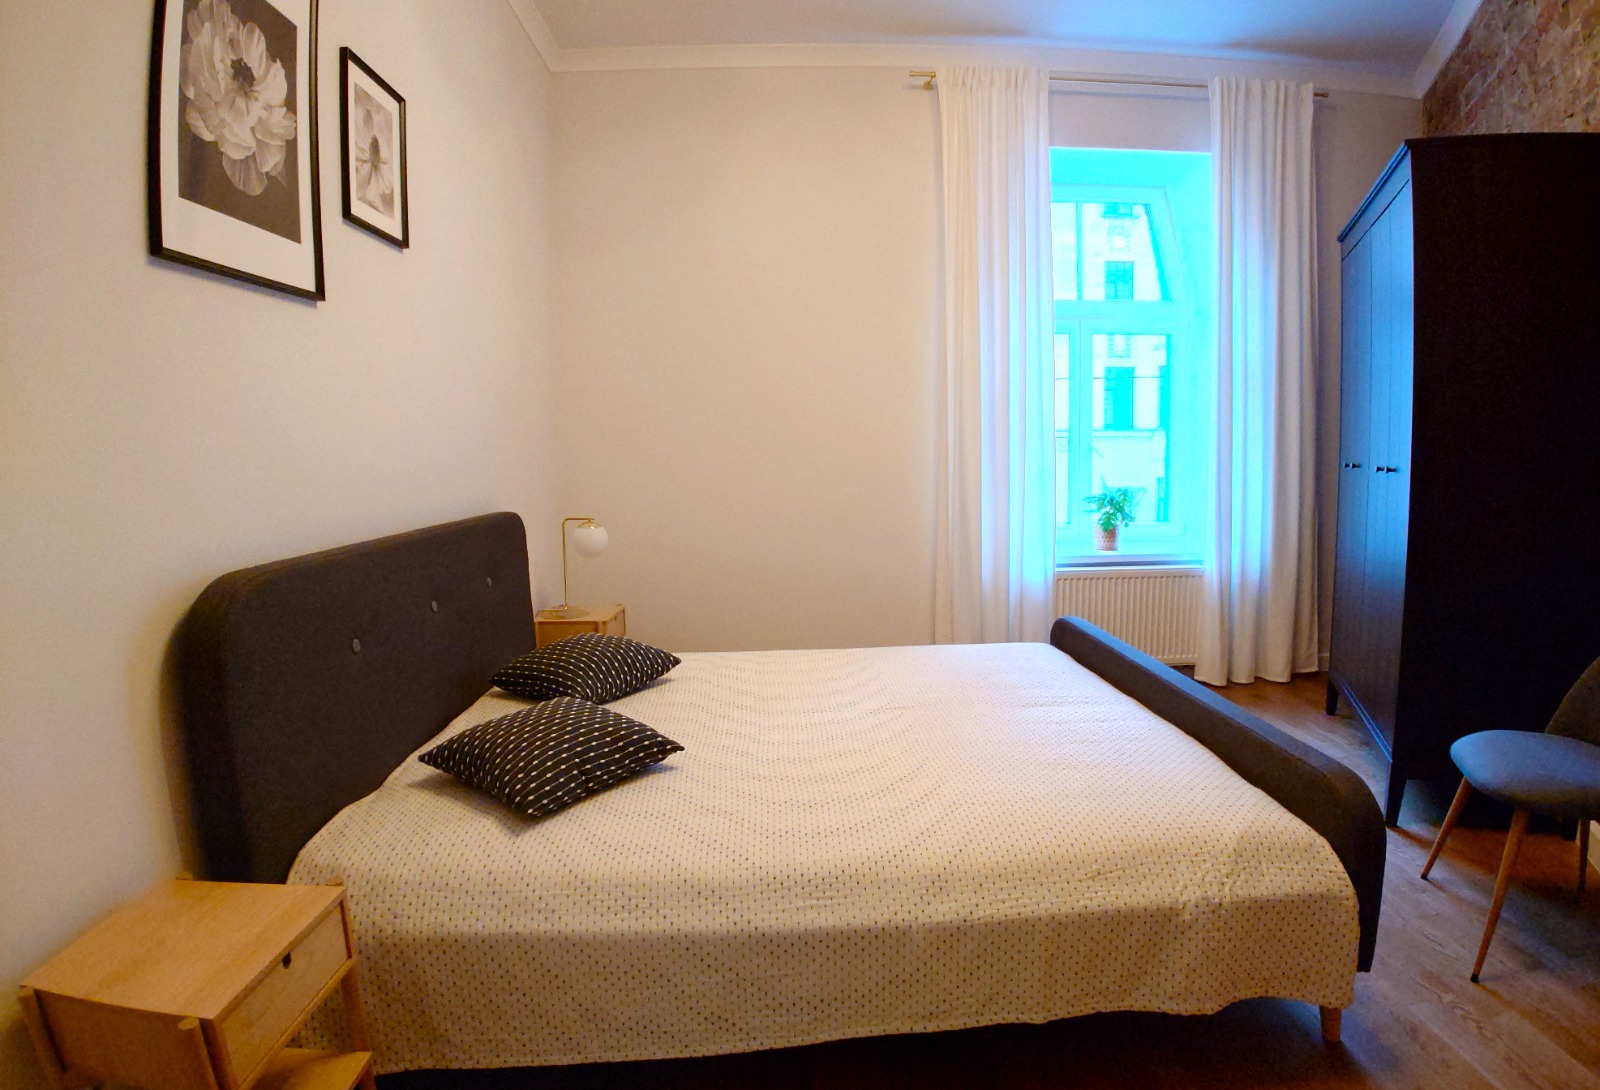 Apartment for rent, Čaka street 26 - Image 1